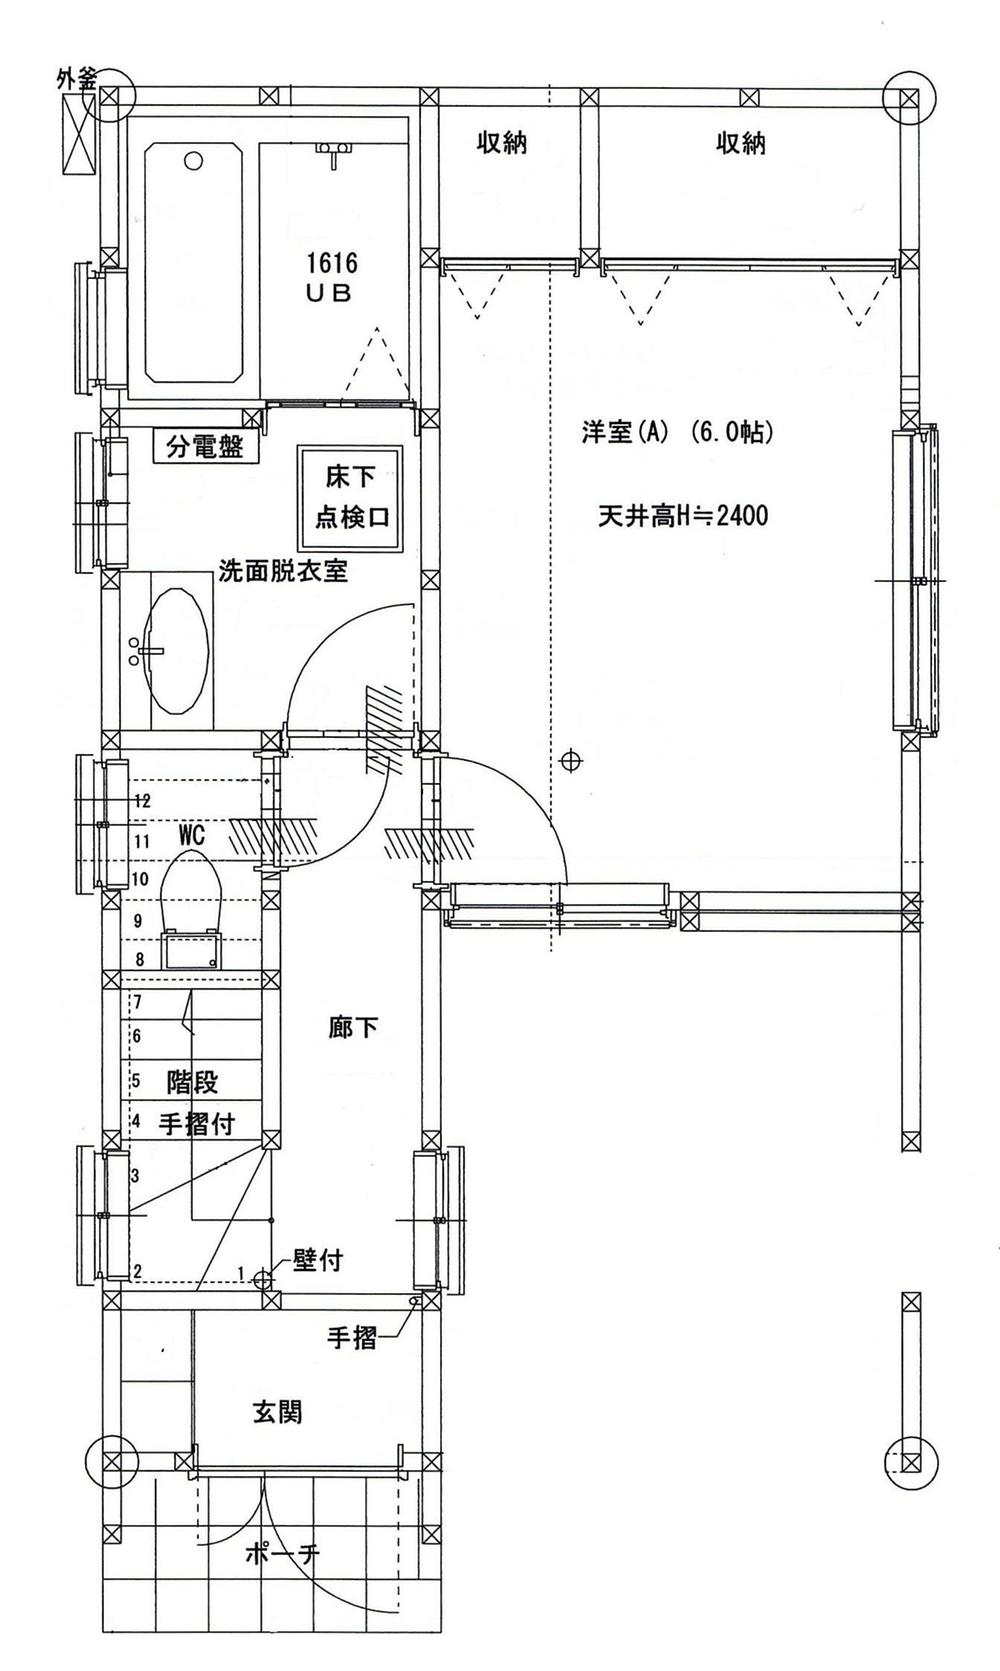 Floor plan. 32,800,000 yen, 3LDK + S (storeroom), Land area 78 sq m , Building area 101.42 sq m first floor